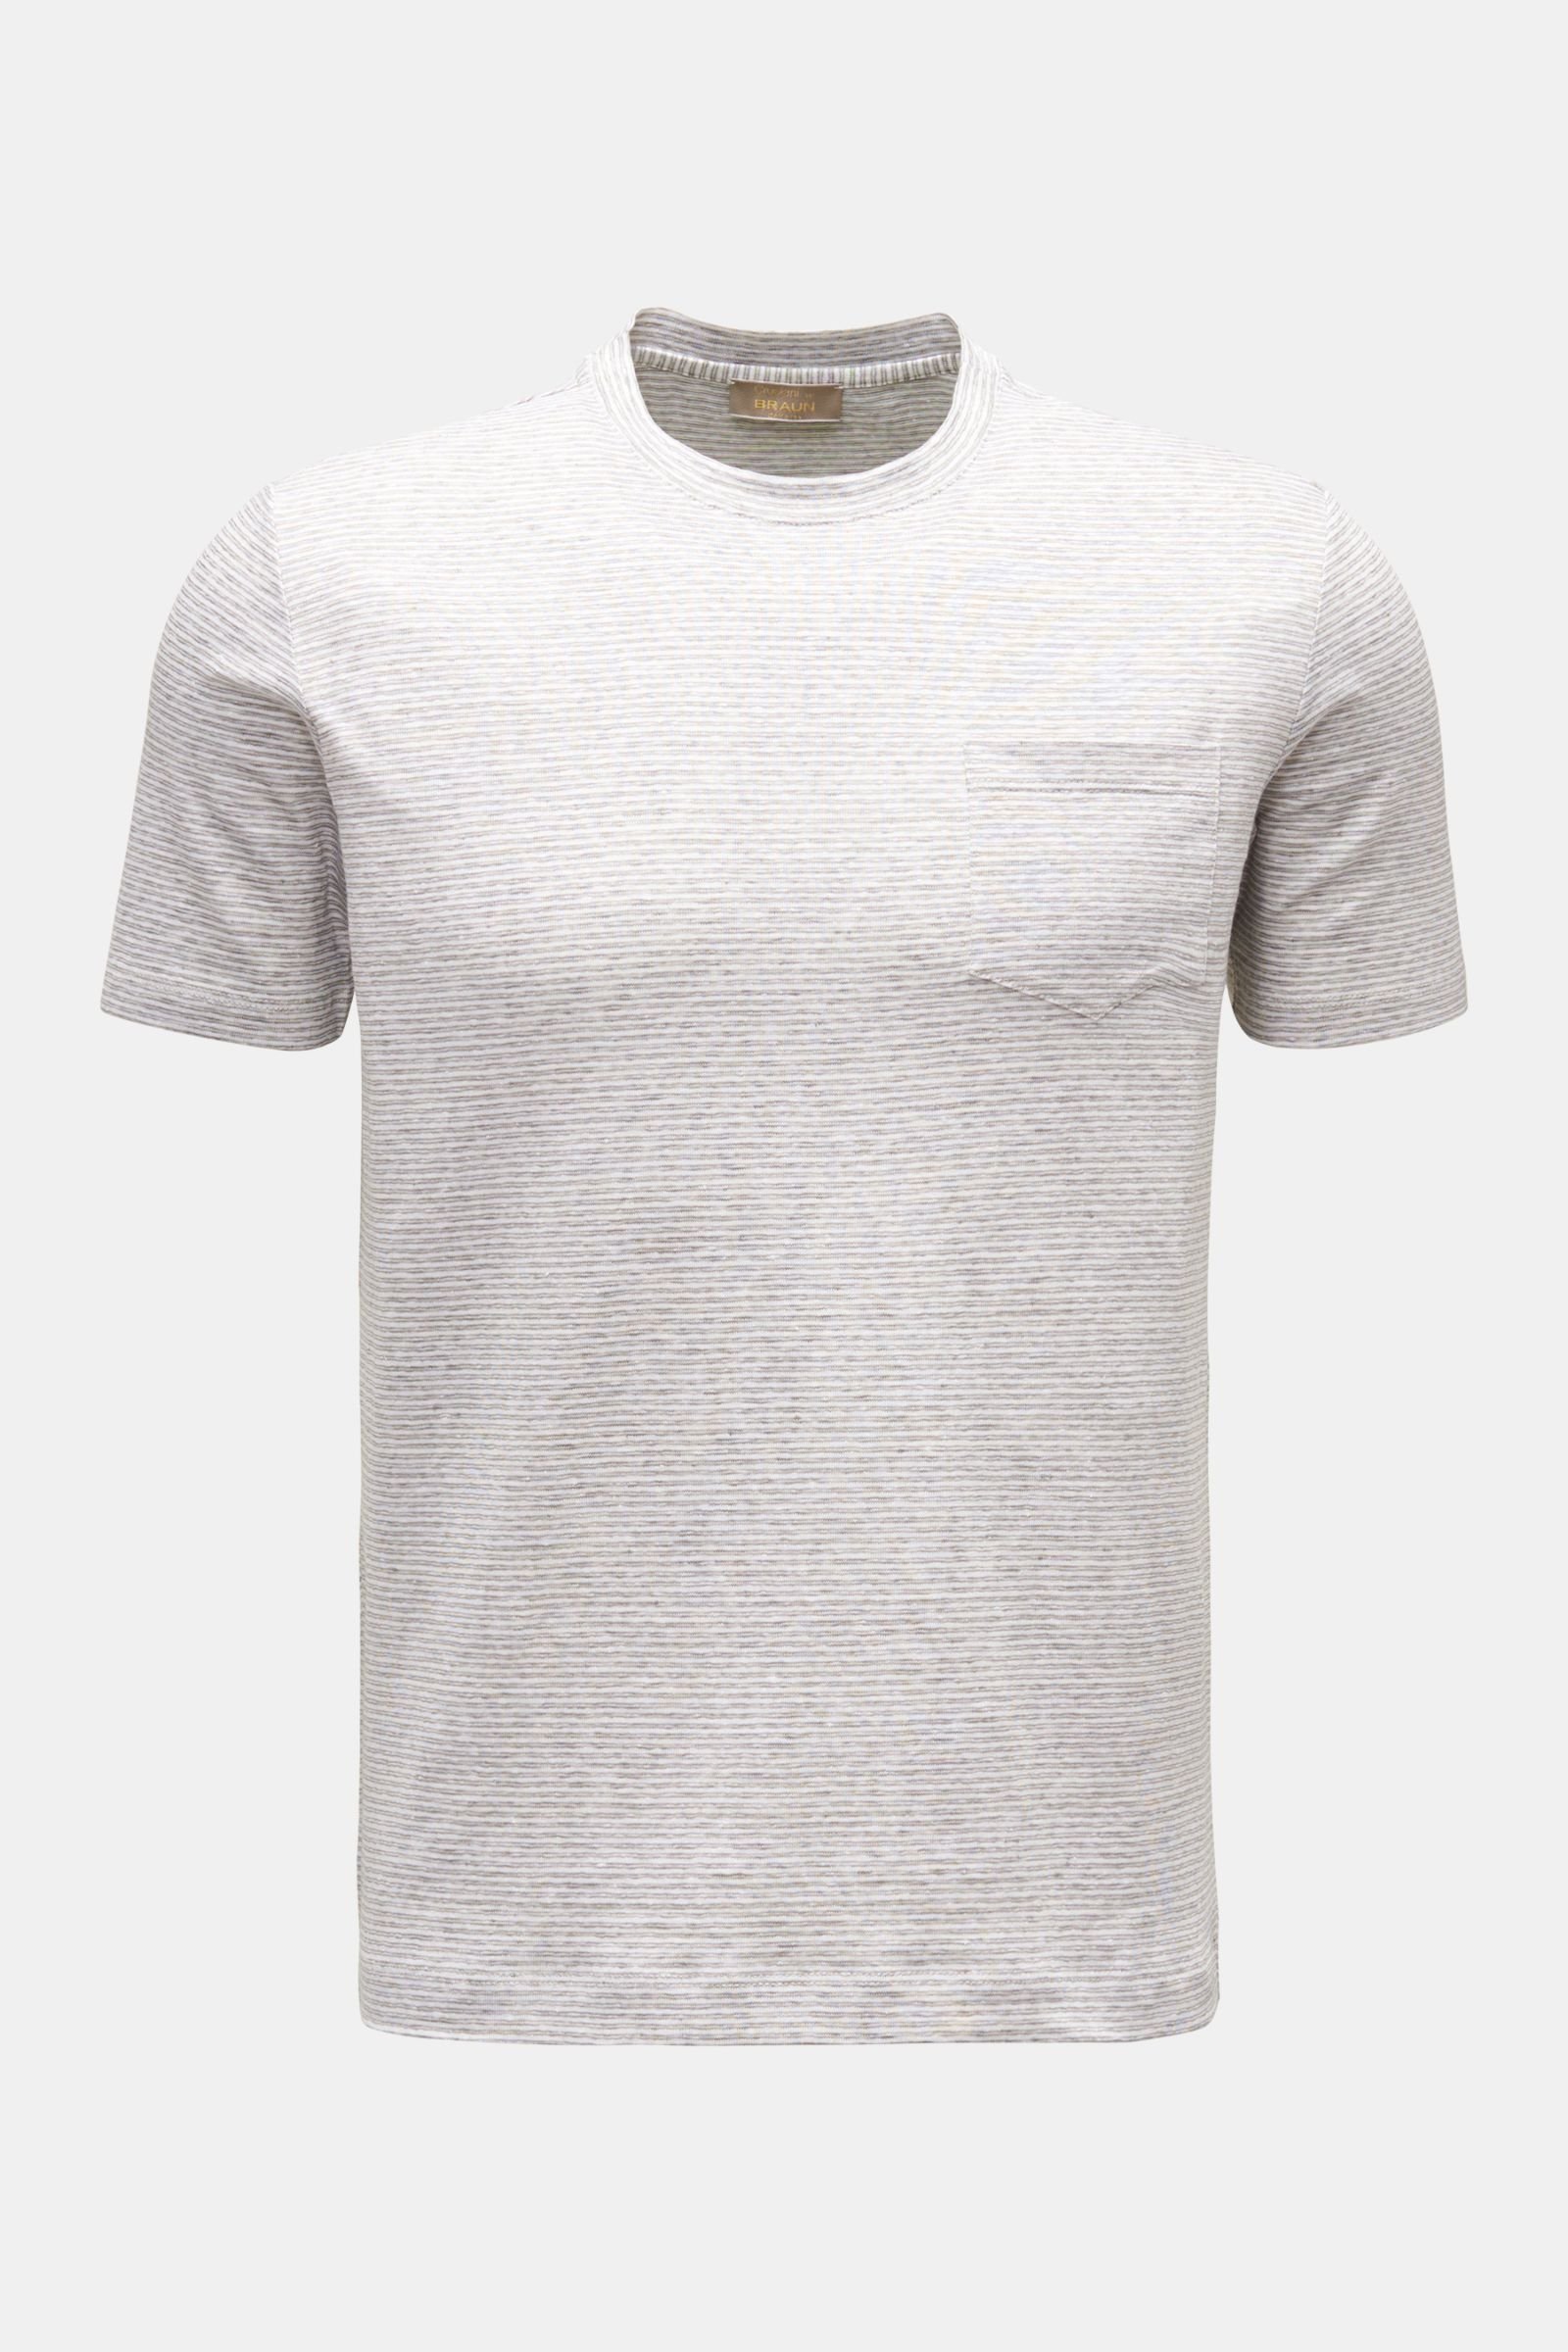 Leinen Rundhals-T-Shirt grau/weiß gestreift